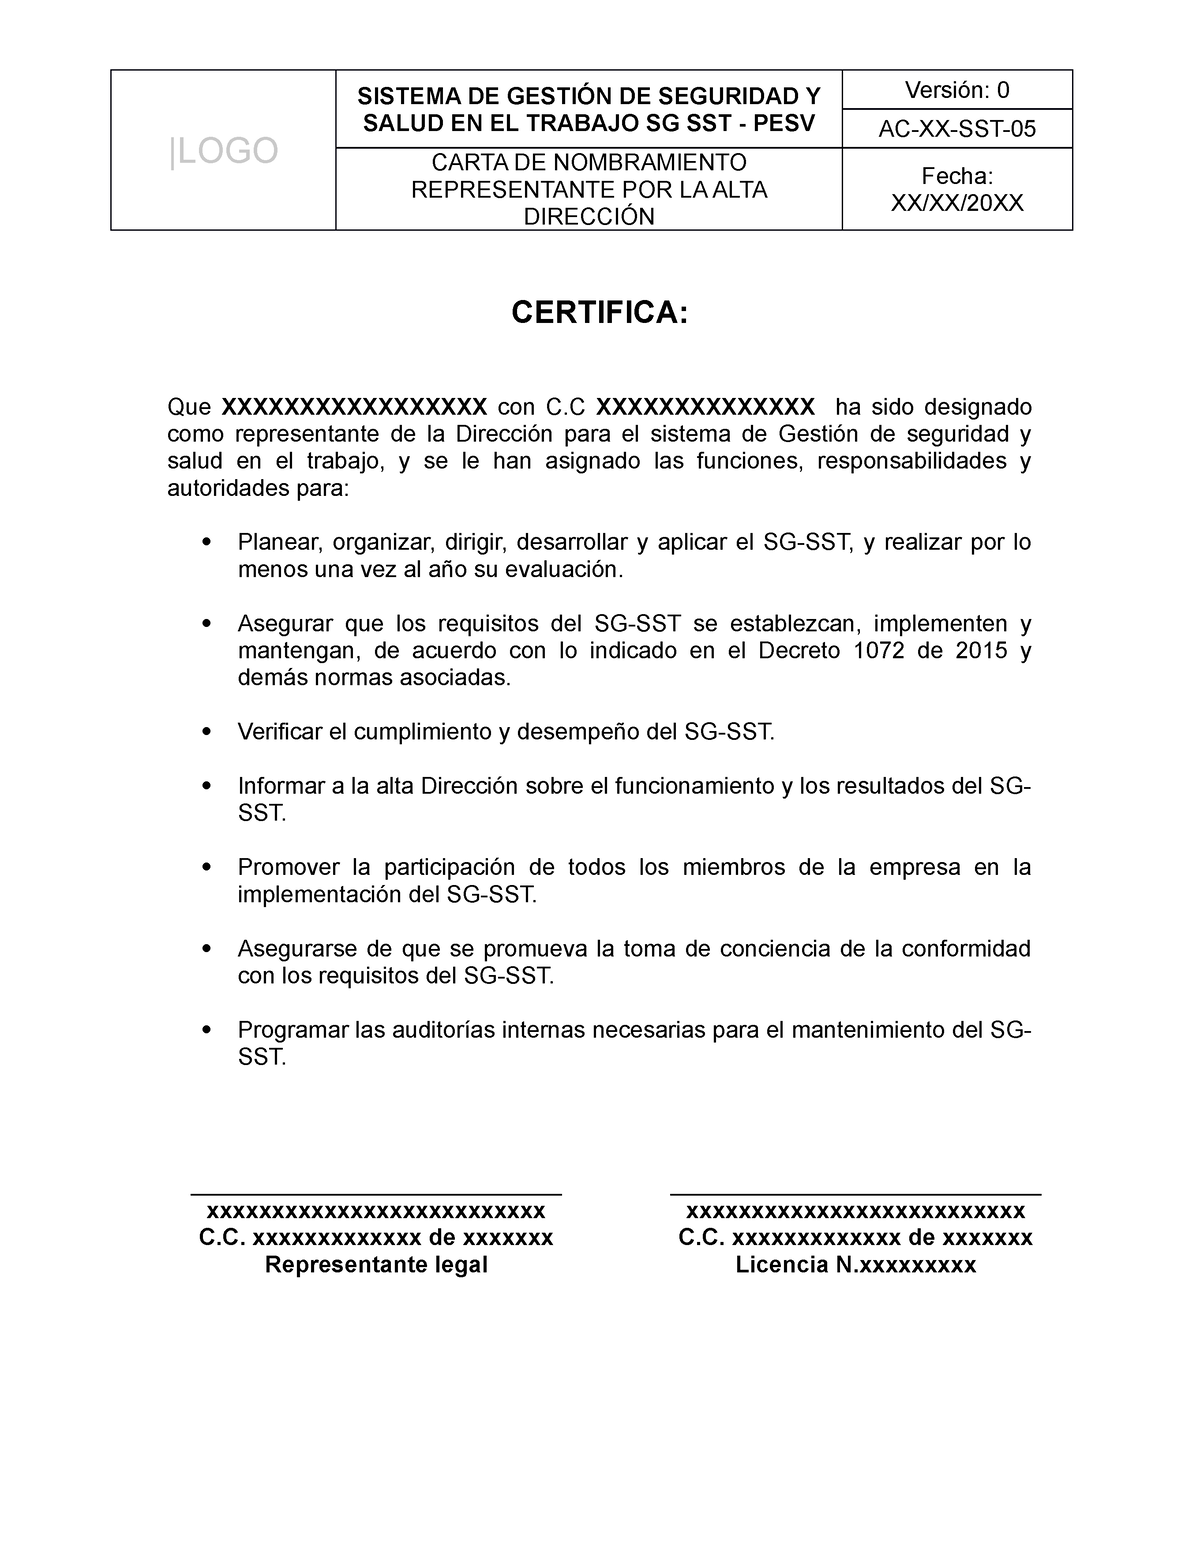 AC-XX-SST-05 Carta de nombramiento representante por la Alta Direccion ...